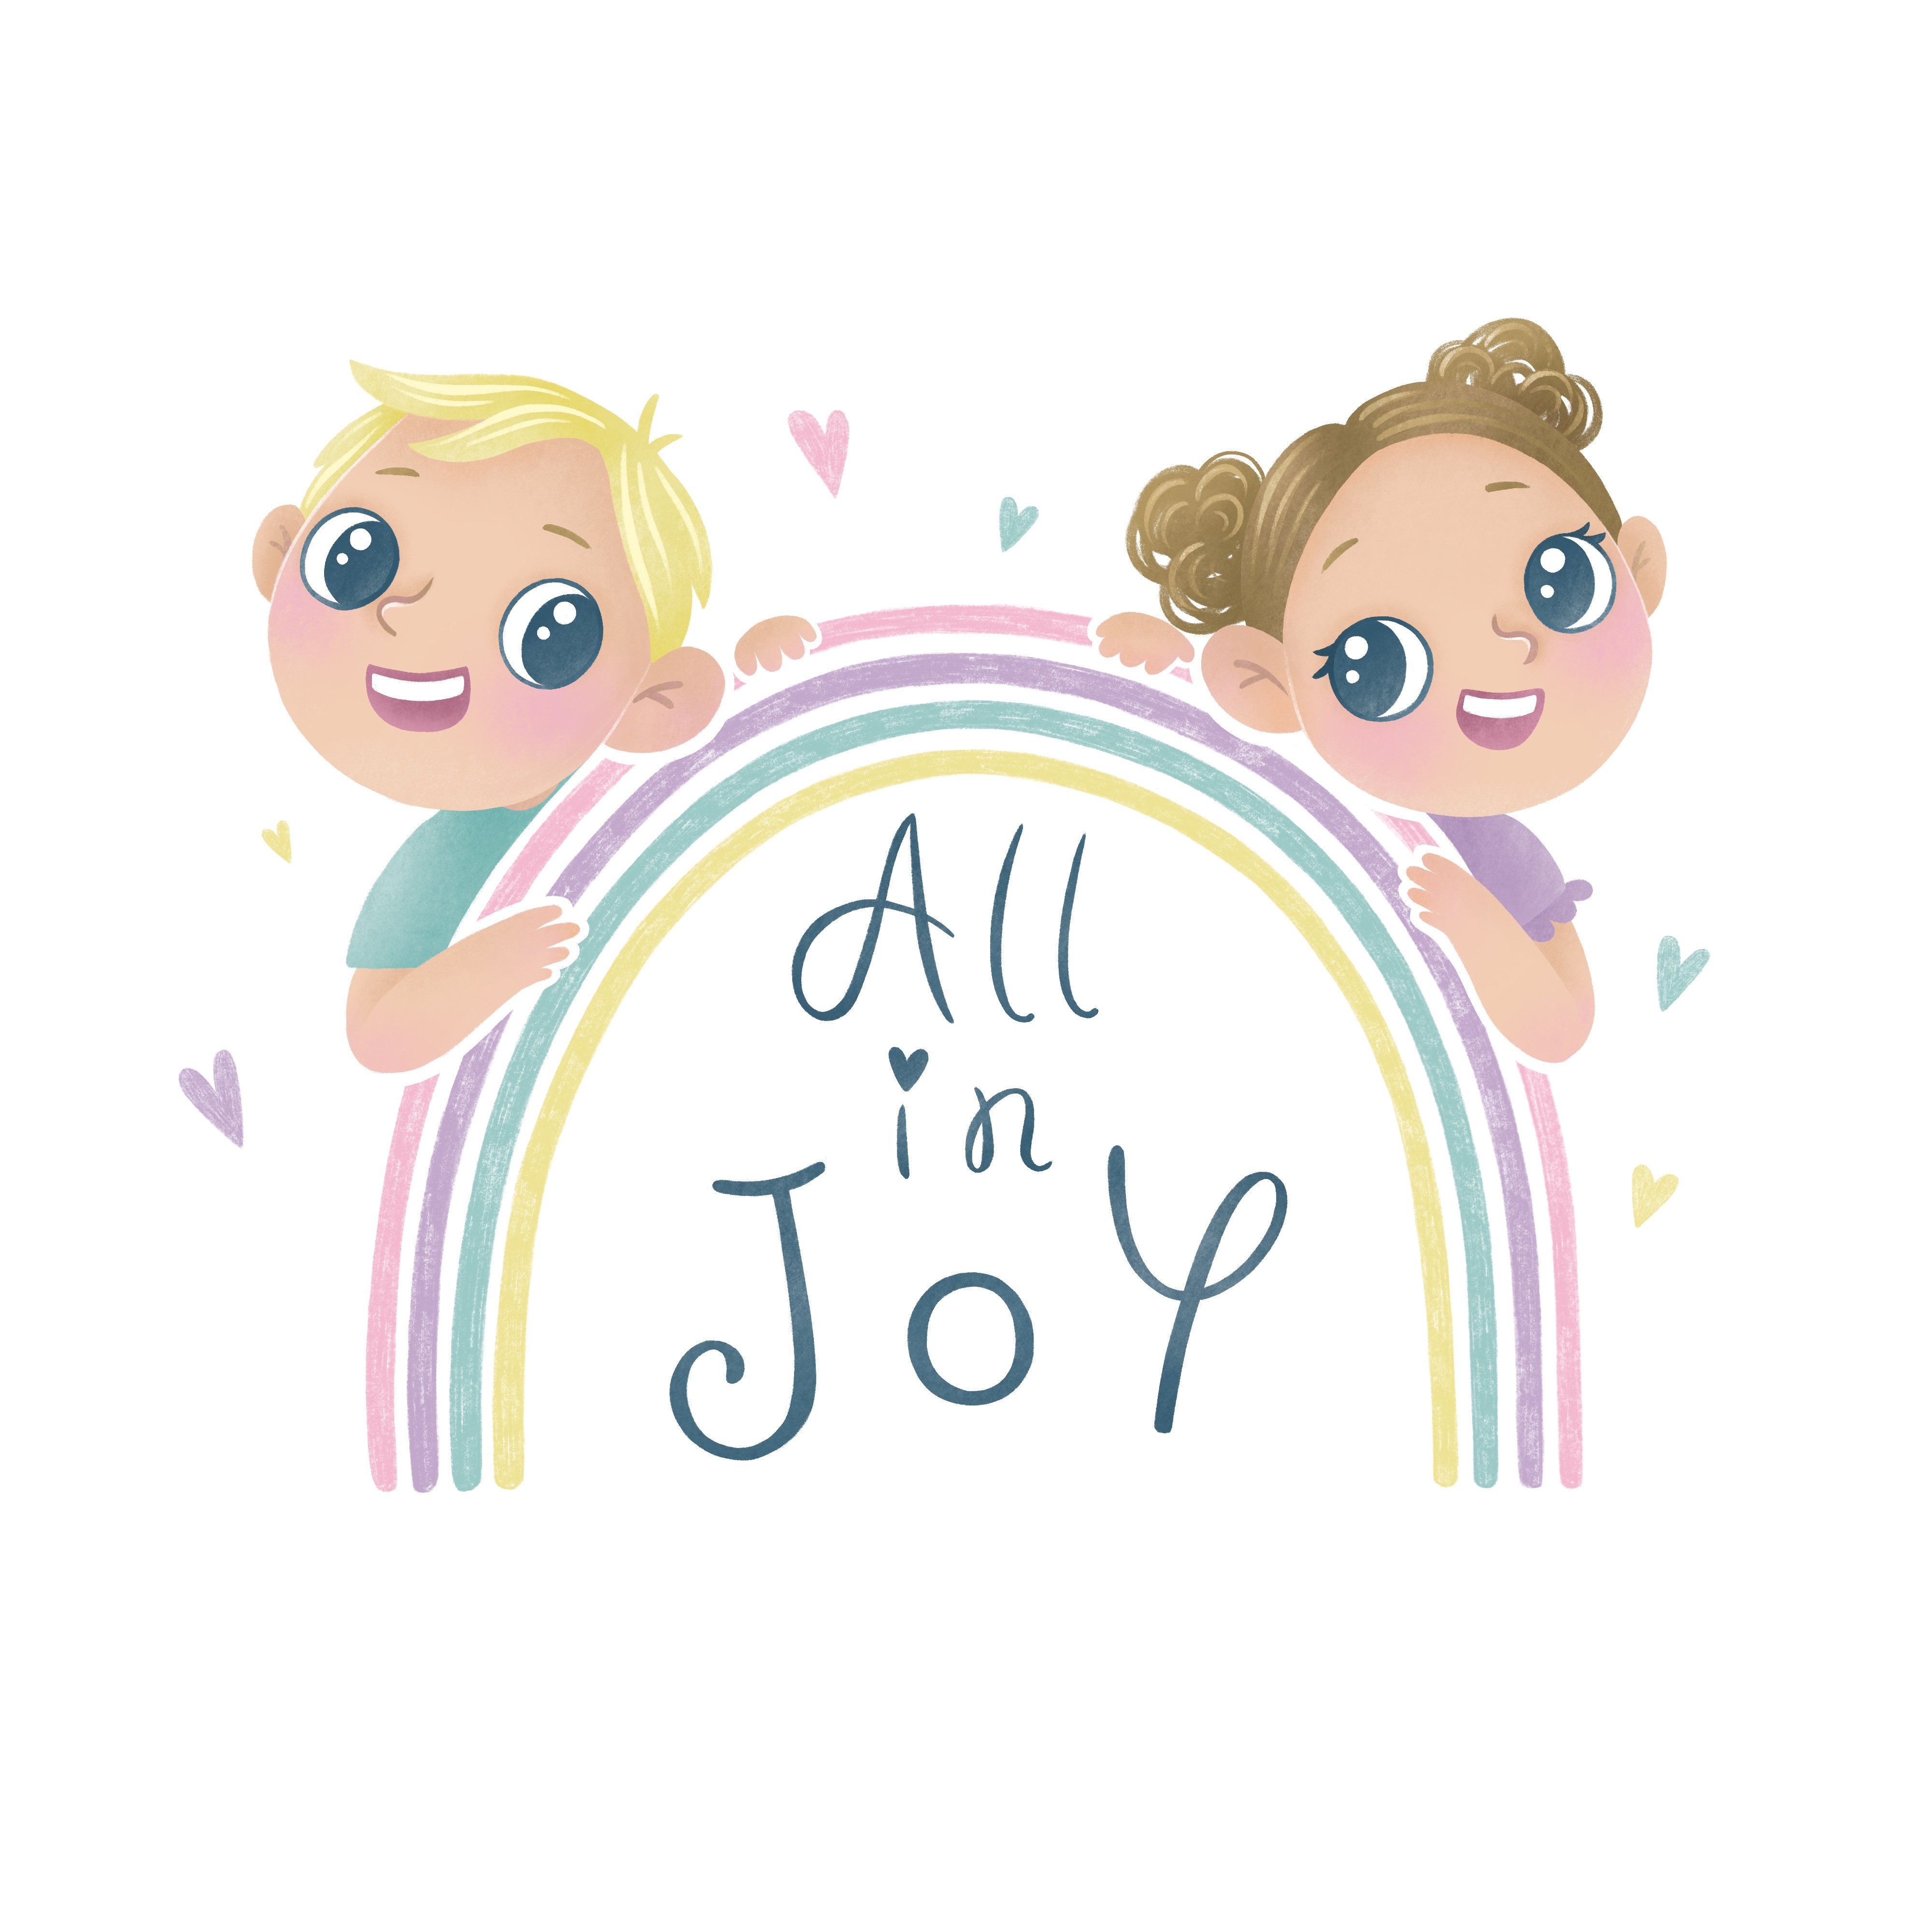 All in Joy